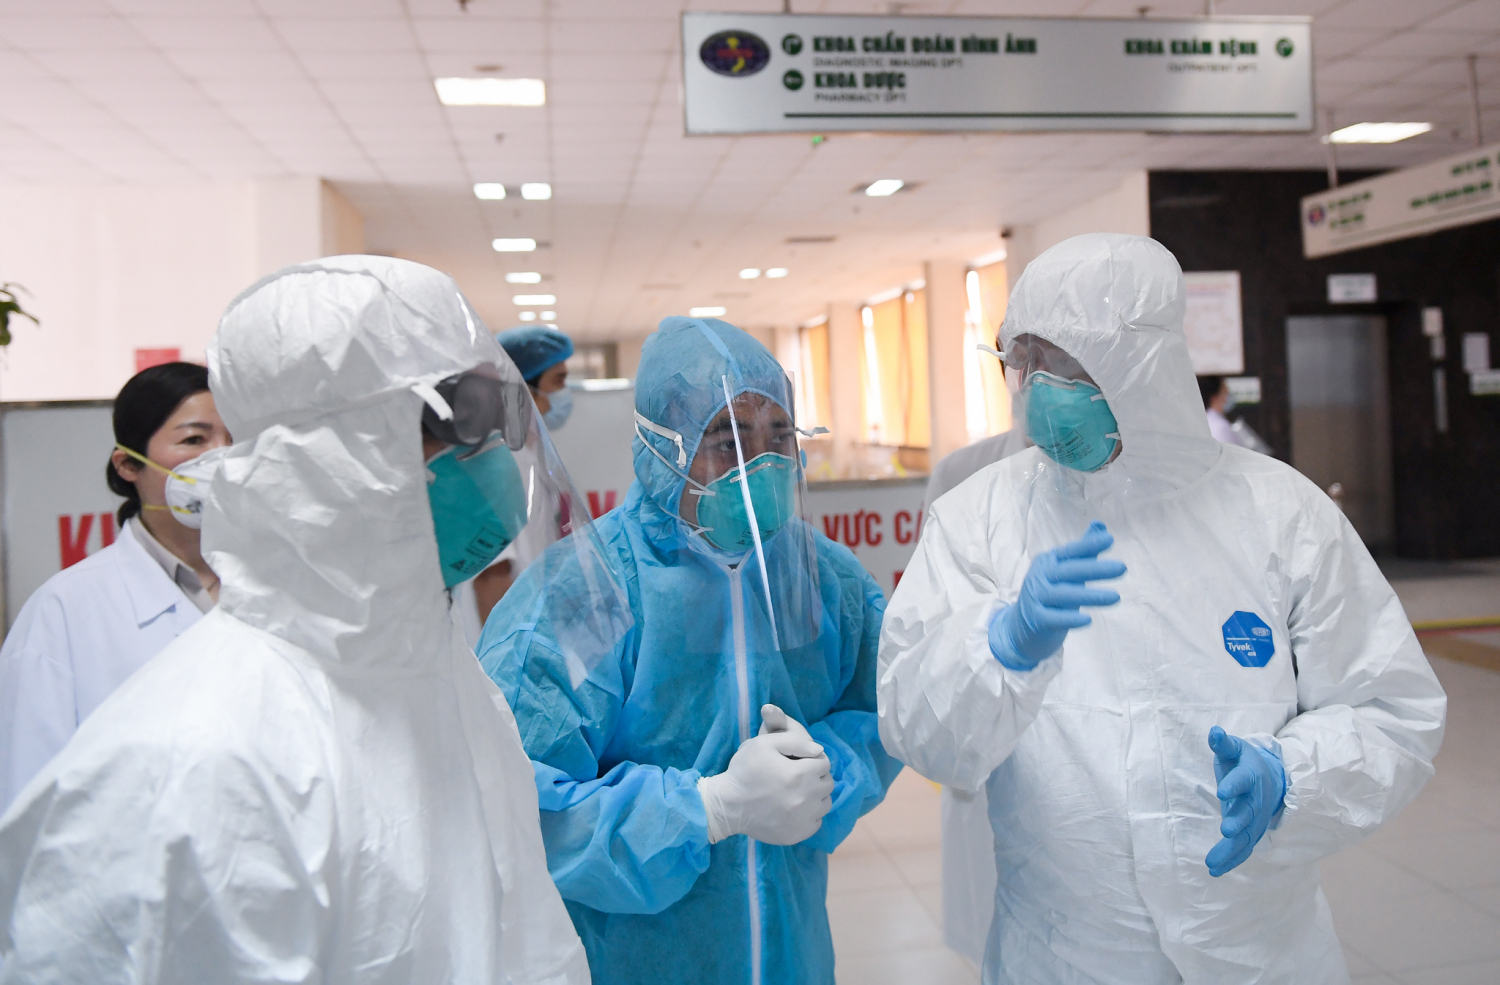 Các bác sĩ tại Bệnh viện Bệnh Nhiệt đới Trung ương cơ sở 2 (Đông Anh, Hà Nội), nơi đang điều trị nhiều ca mắc Covid-19. Ảnh: Bộ Y tế.